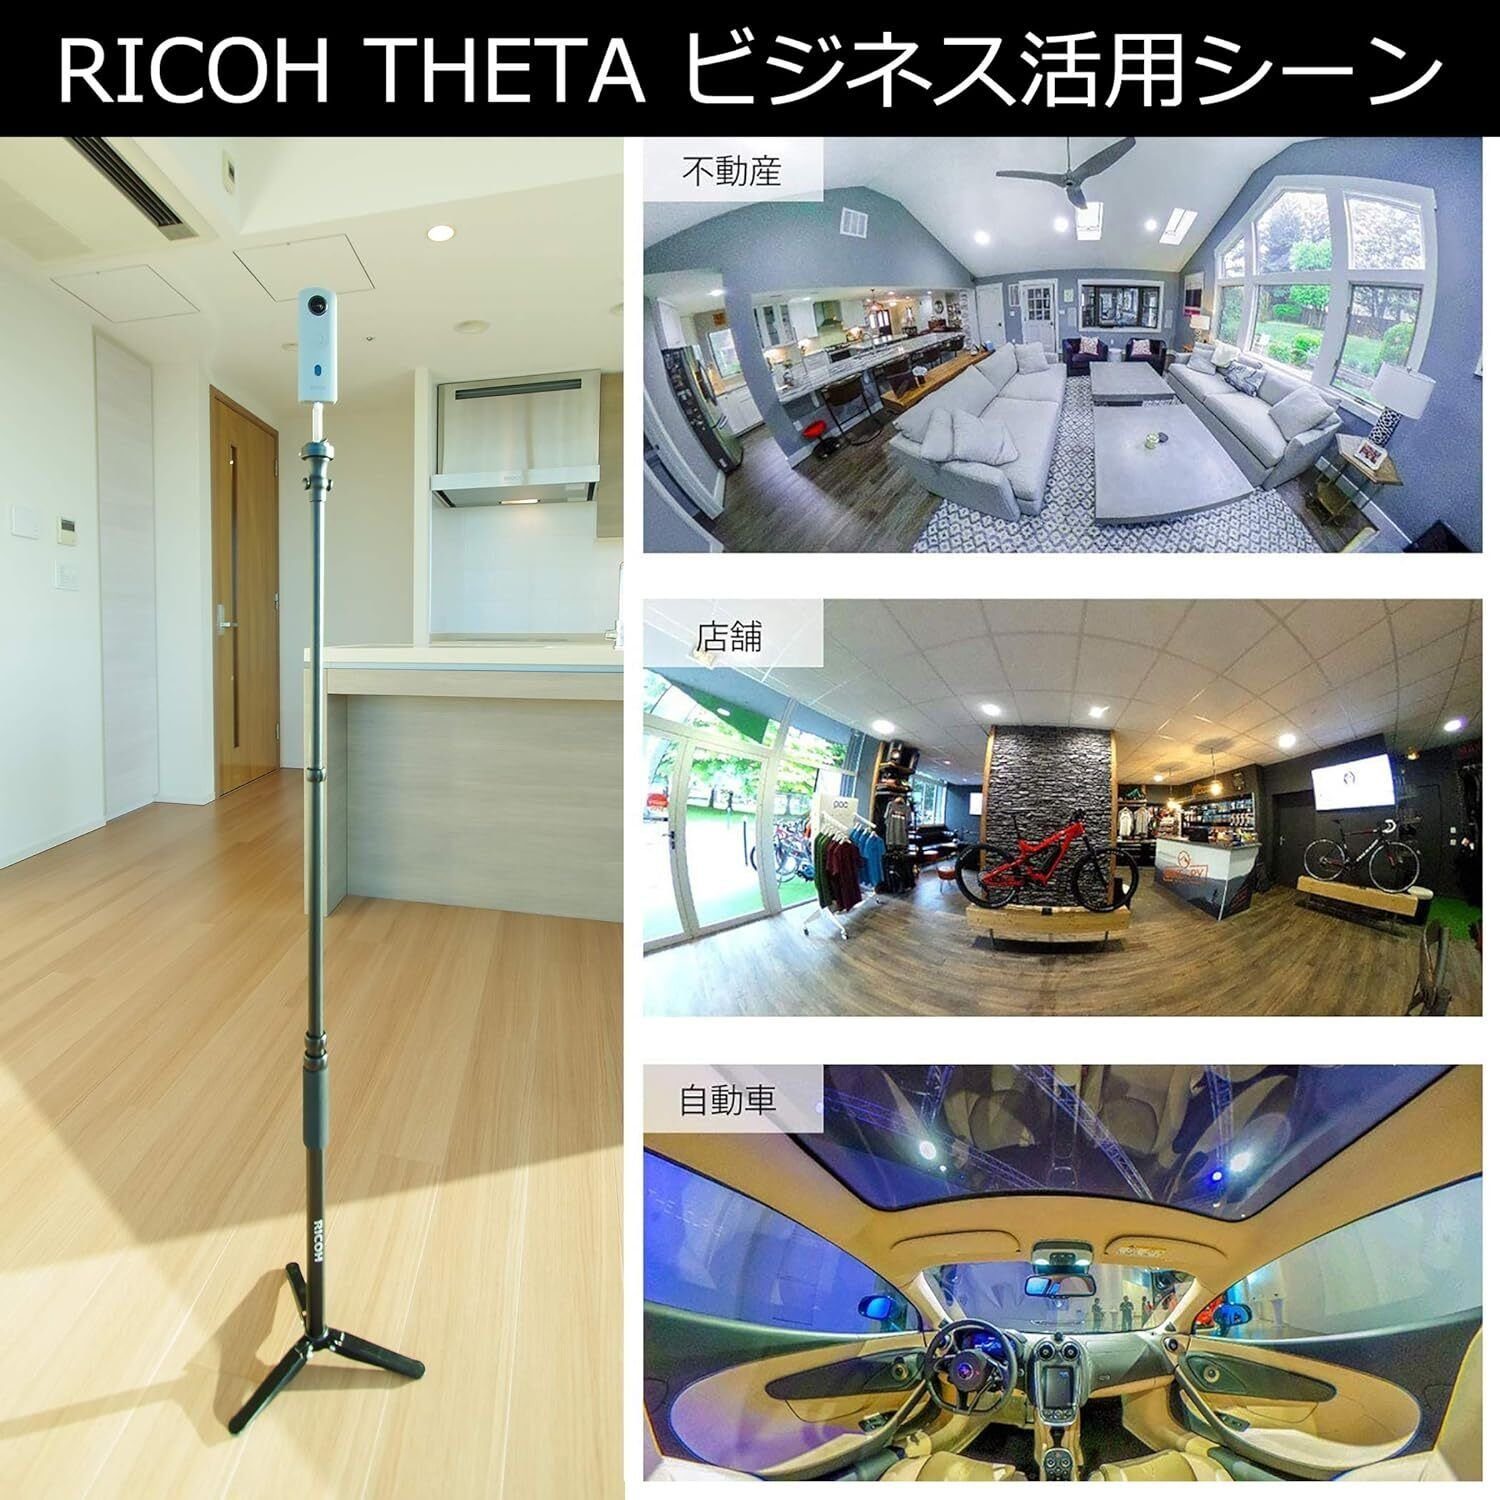 (Wi-Fi) Ricoh 360°-Kamera (WLAN SC2 Theta